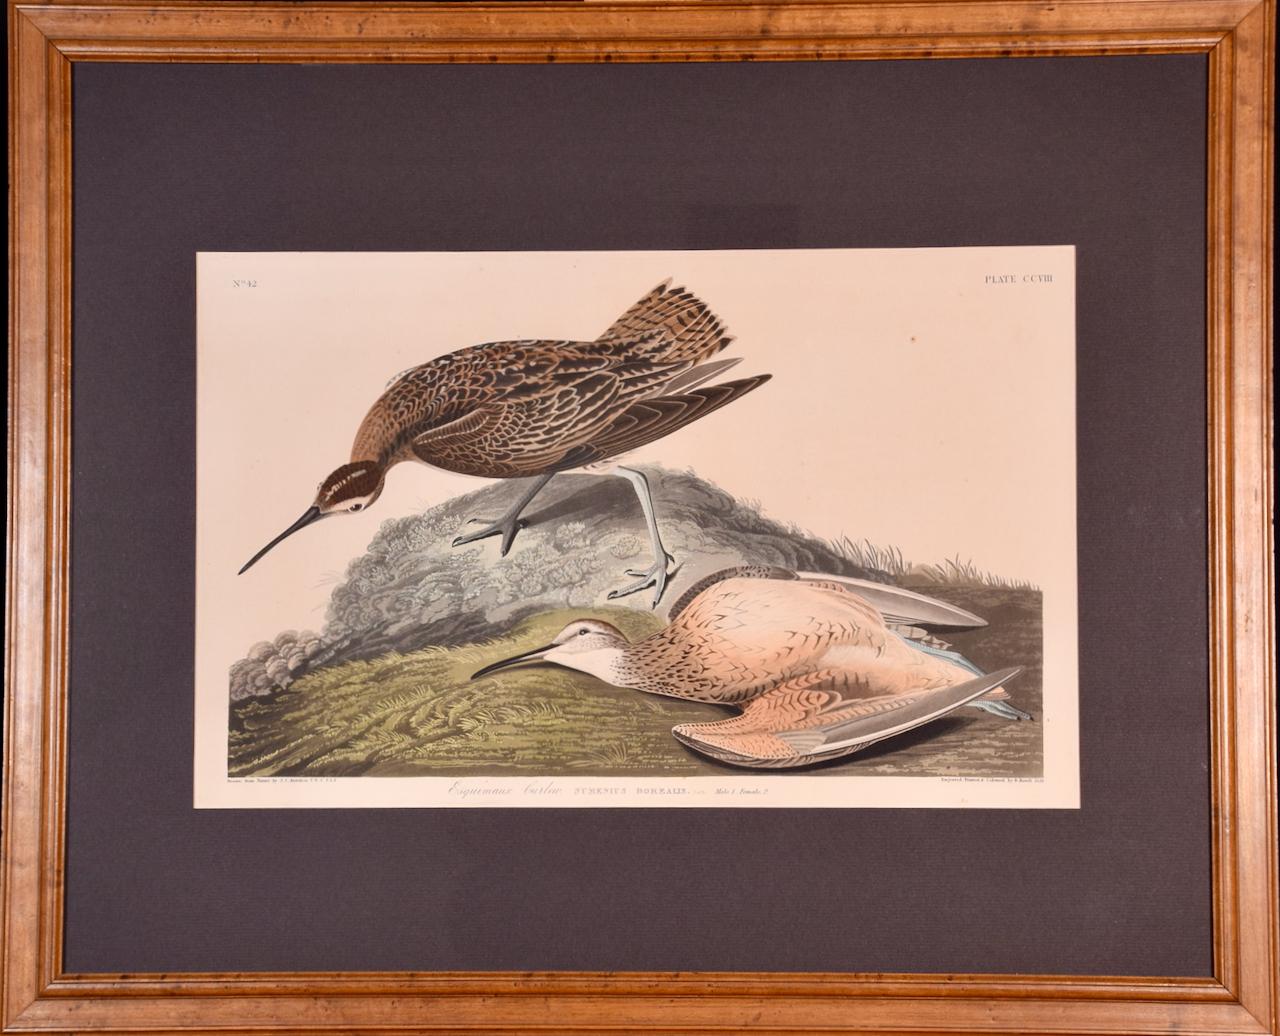 John James Audubon Landscape Print - "Esquimaux Curlew": A Framed Original Audubon Hand-colored Folio Engraving 